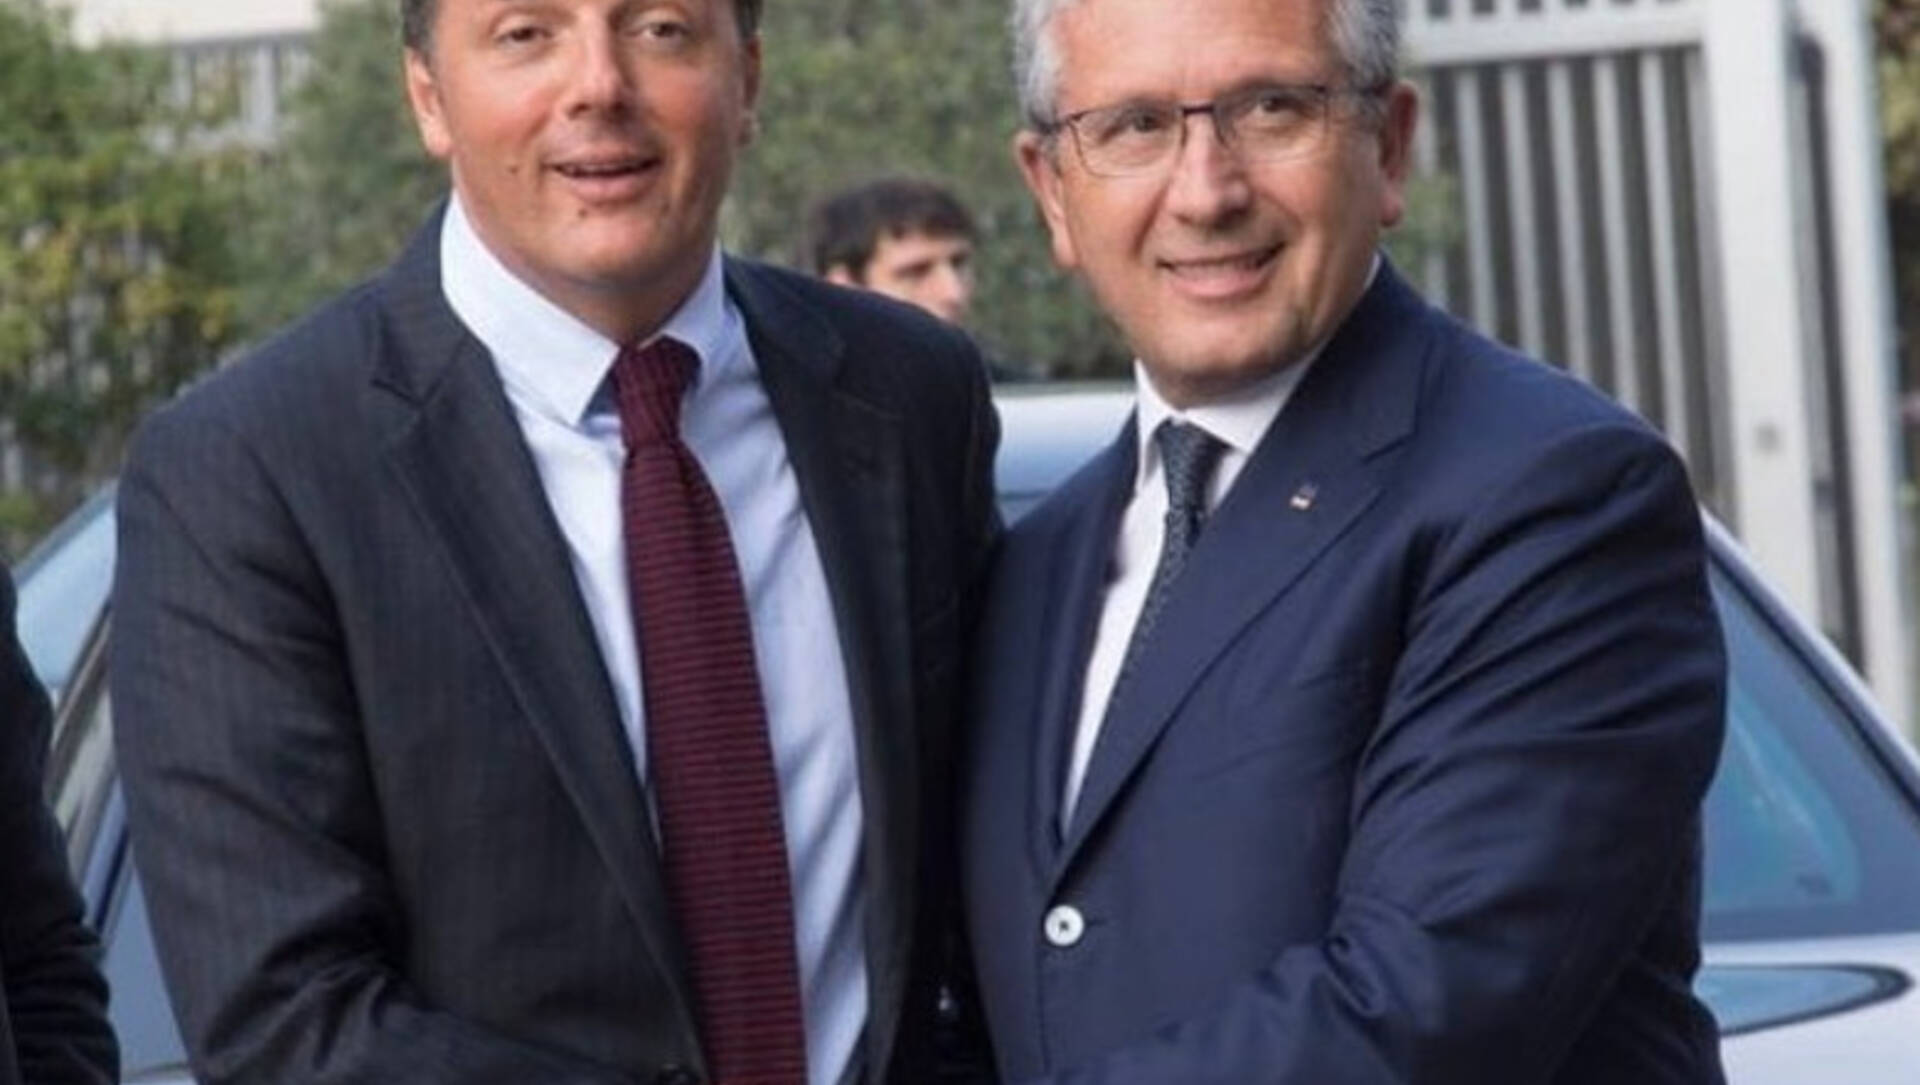 Europee: Librandi: “Mi candido con Renzi, Italia c’è pronta alla sfida”